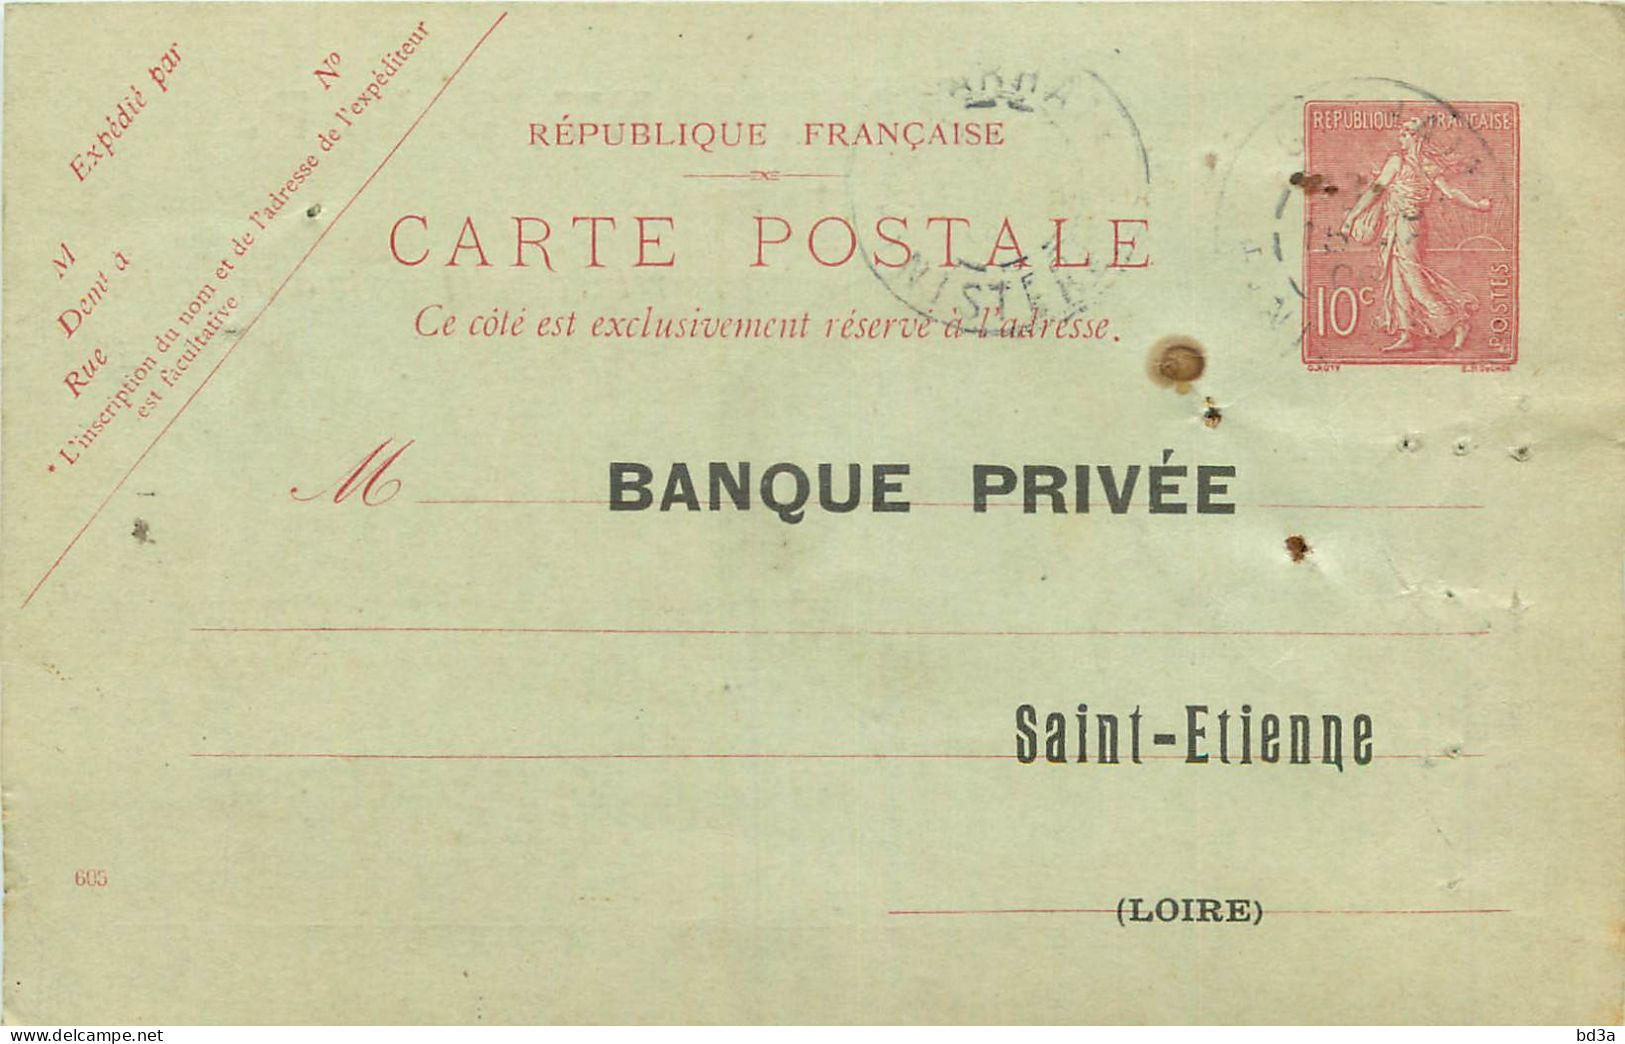 ENTIERS POSTAUX - N° 124 CPI - CACHET COMPTOIR D'ESCOMPTE  DE MORLAIX - 1908 - BANQUE PRIVEE  SAINT ETIENNE -  - Cartes Postales Repiquages (avant 1995)